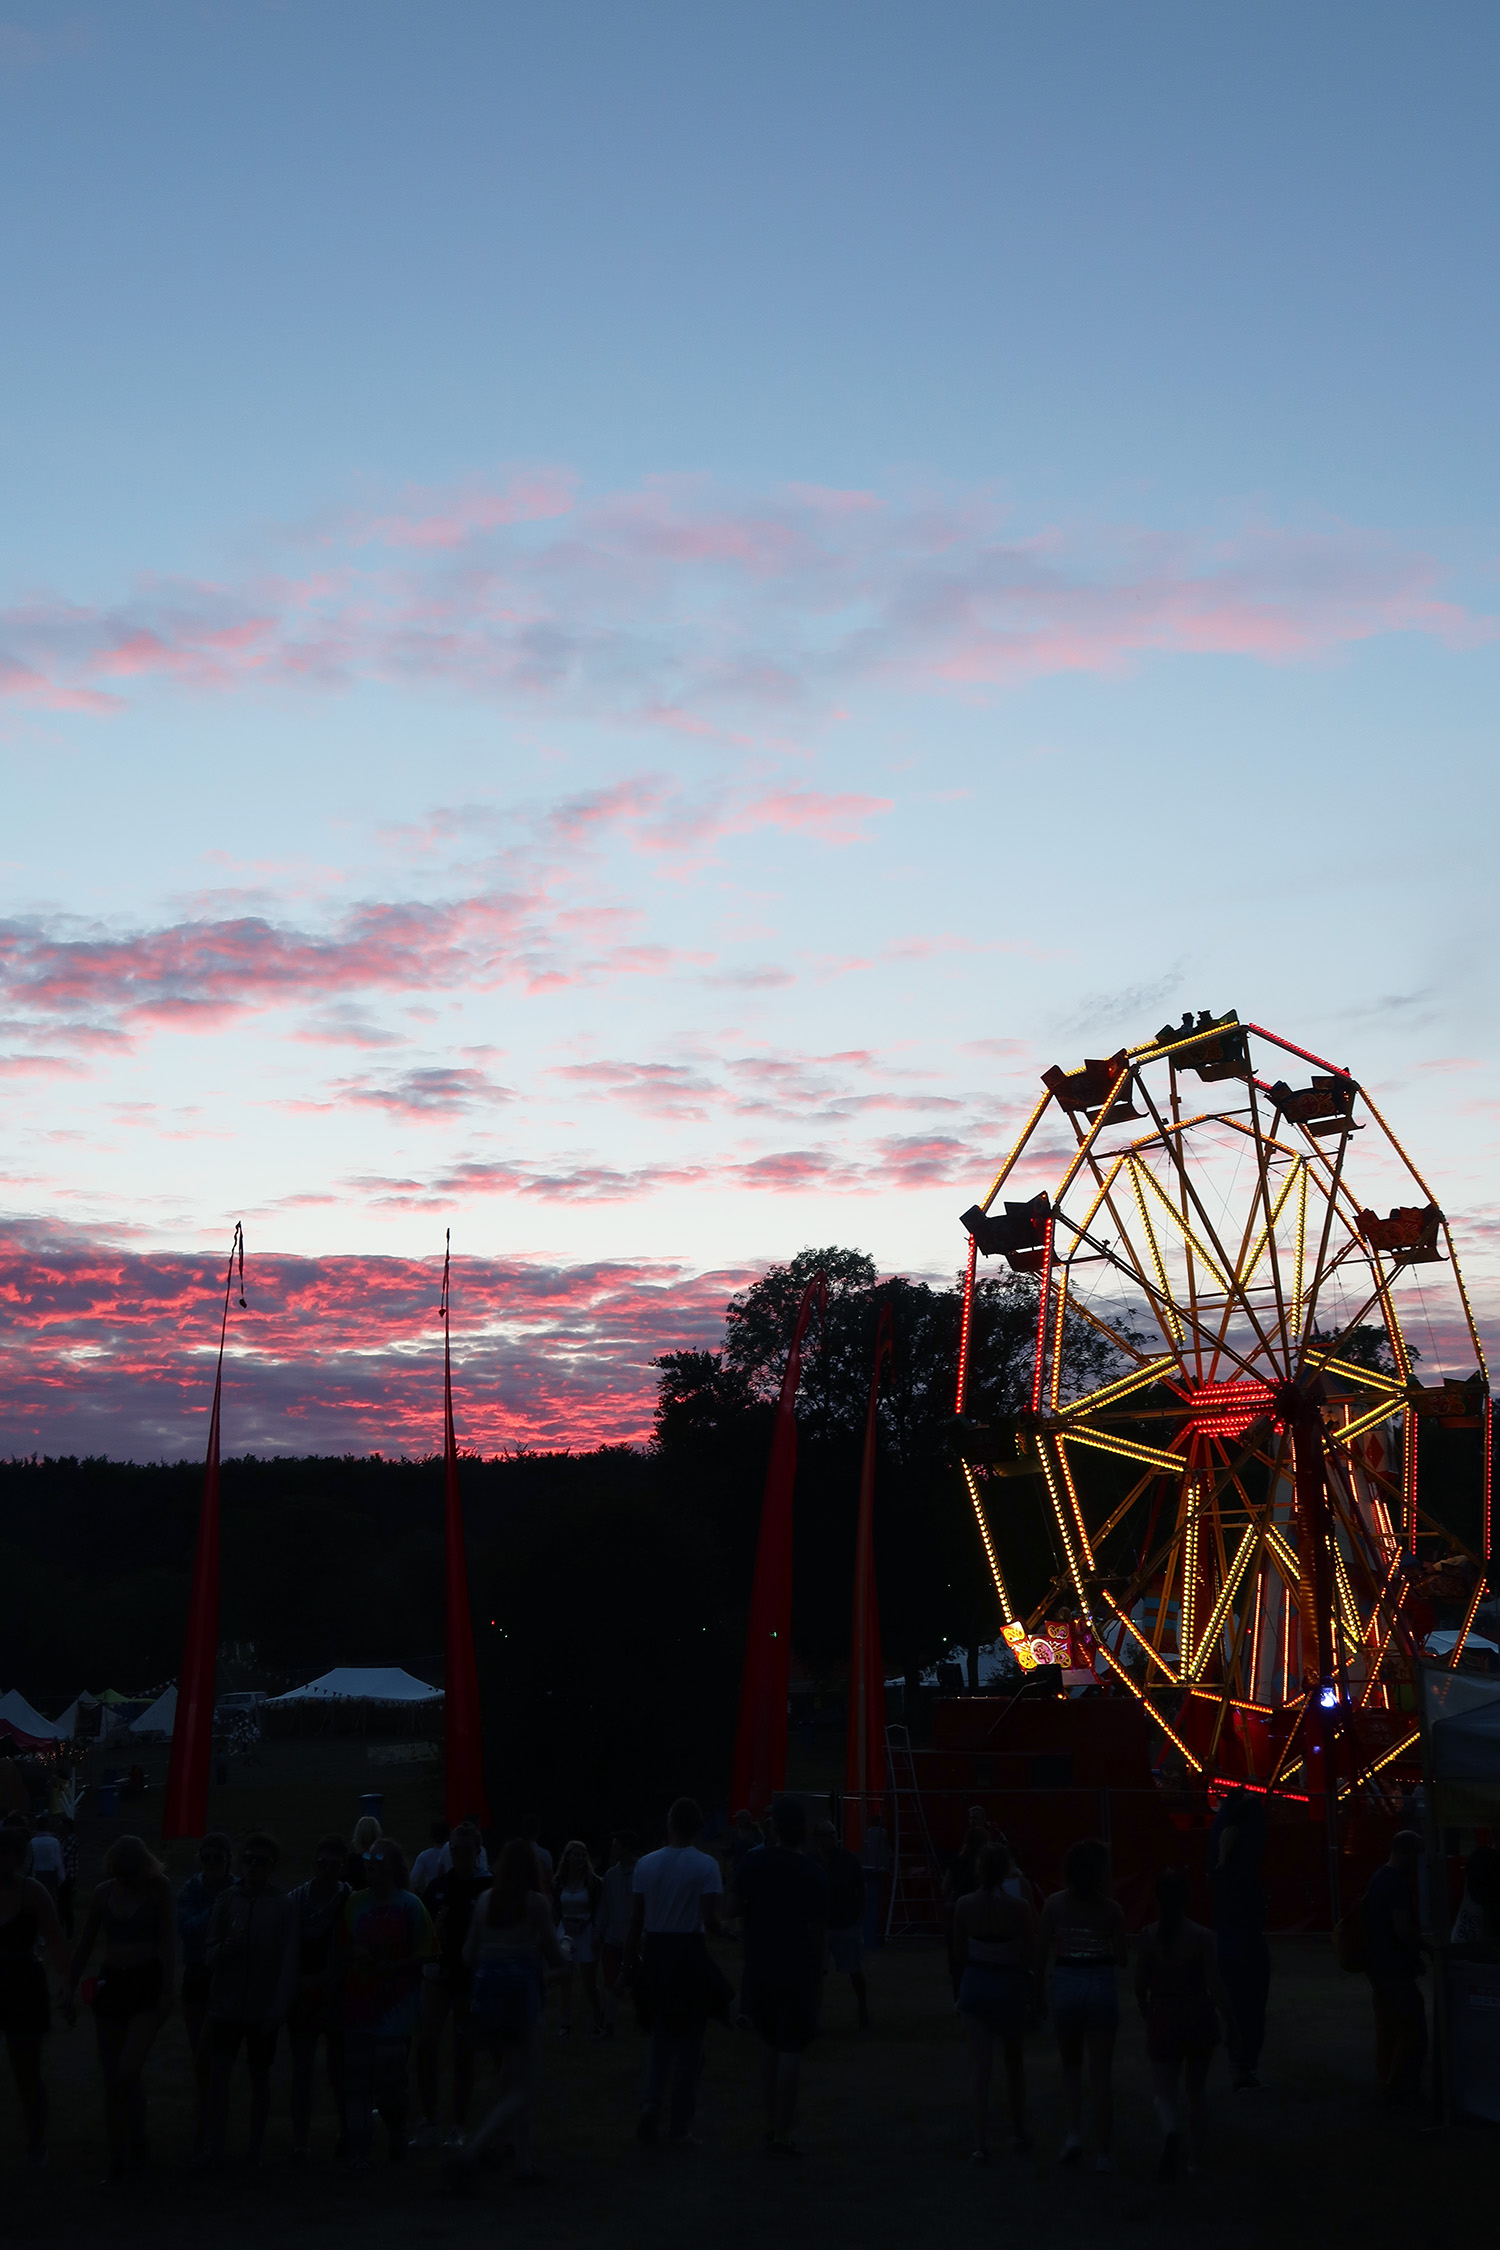 sunset at blissfields festival